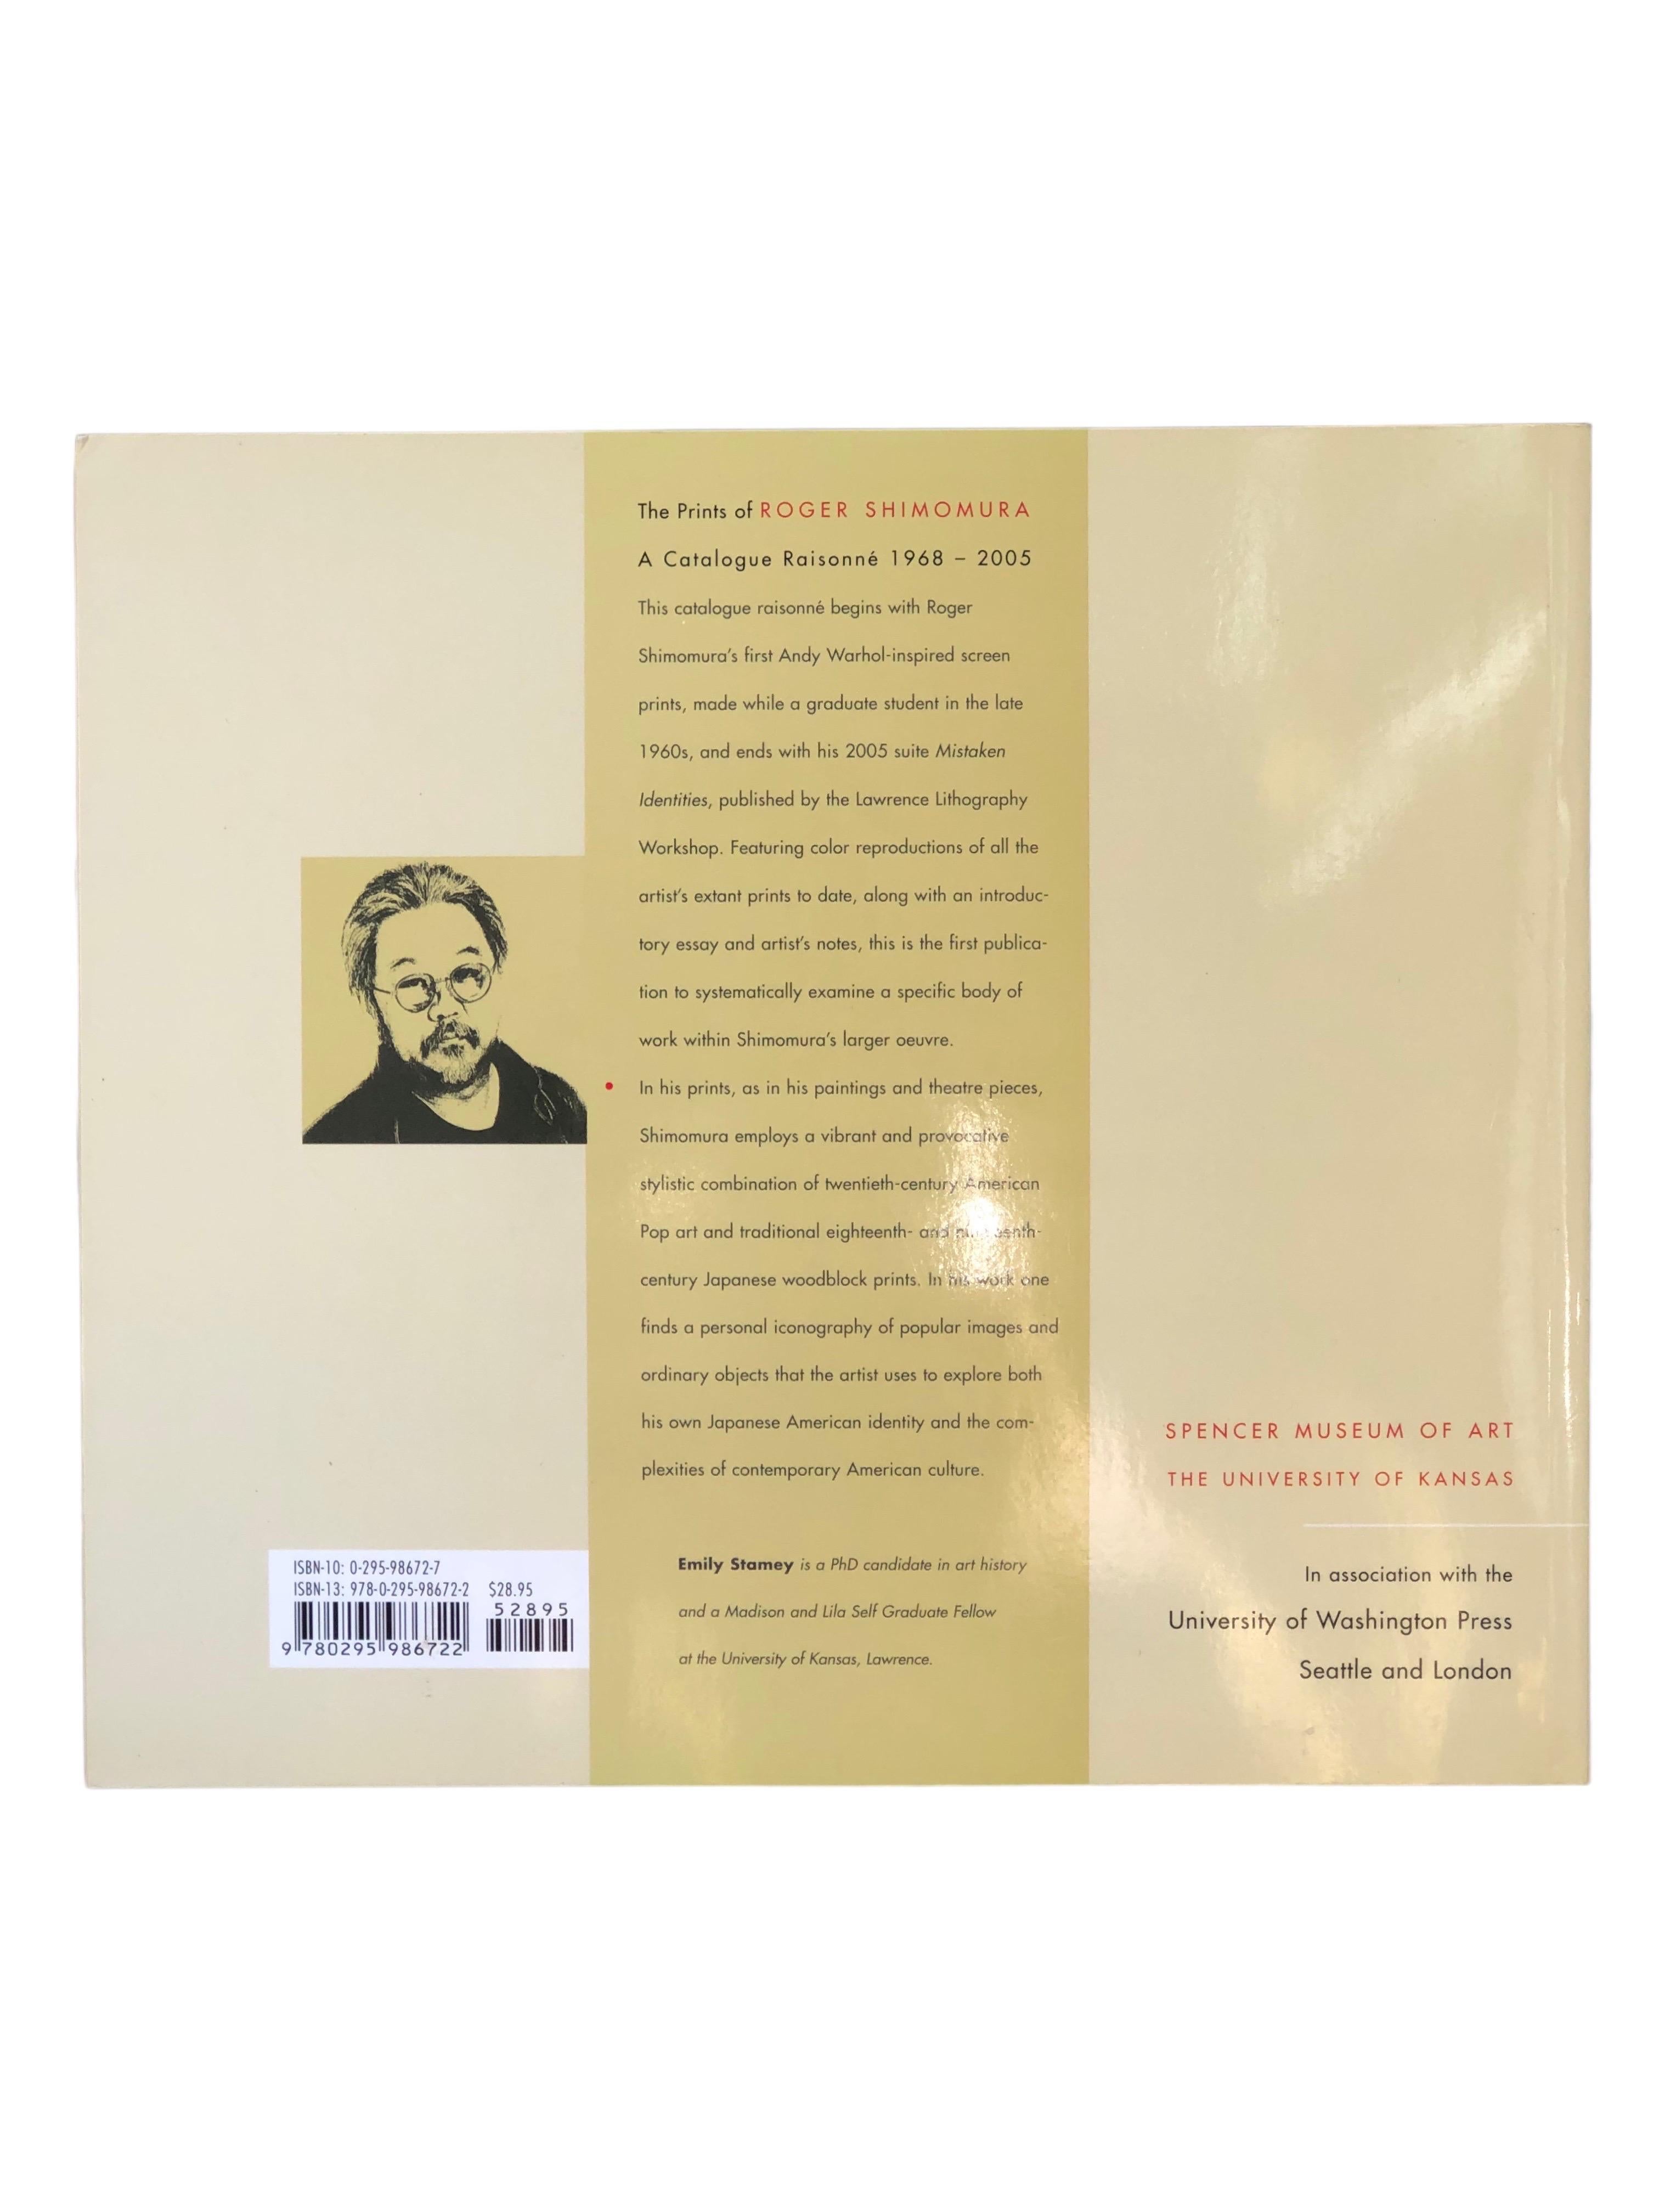 Die Drucke von Roger Shimomura, ein Werkverzeichnis, 1968-2005 von Emily Stamey. Taschenbuch, veröffentlicht von der University of Washington Press im Jahr 2007. Gedruckt in China, illustriert, 150 Seiten. 

